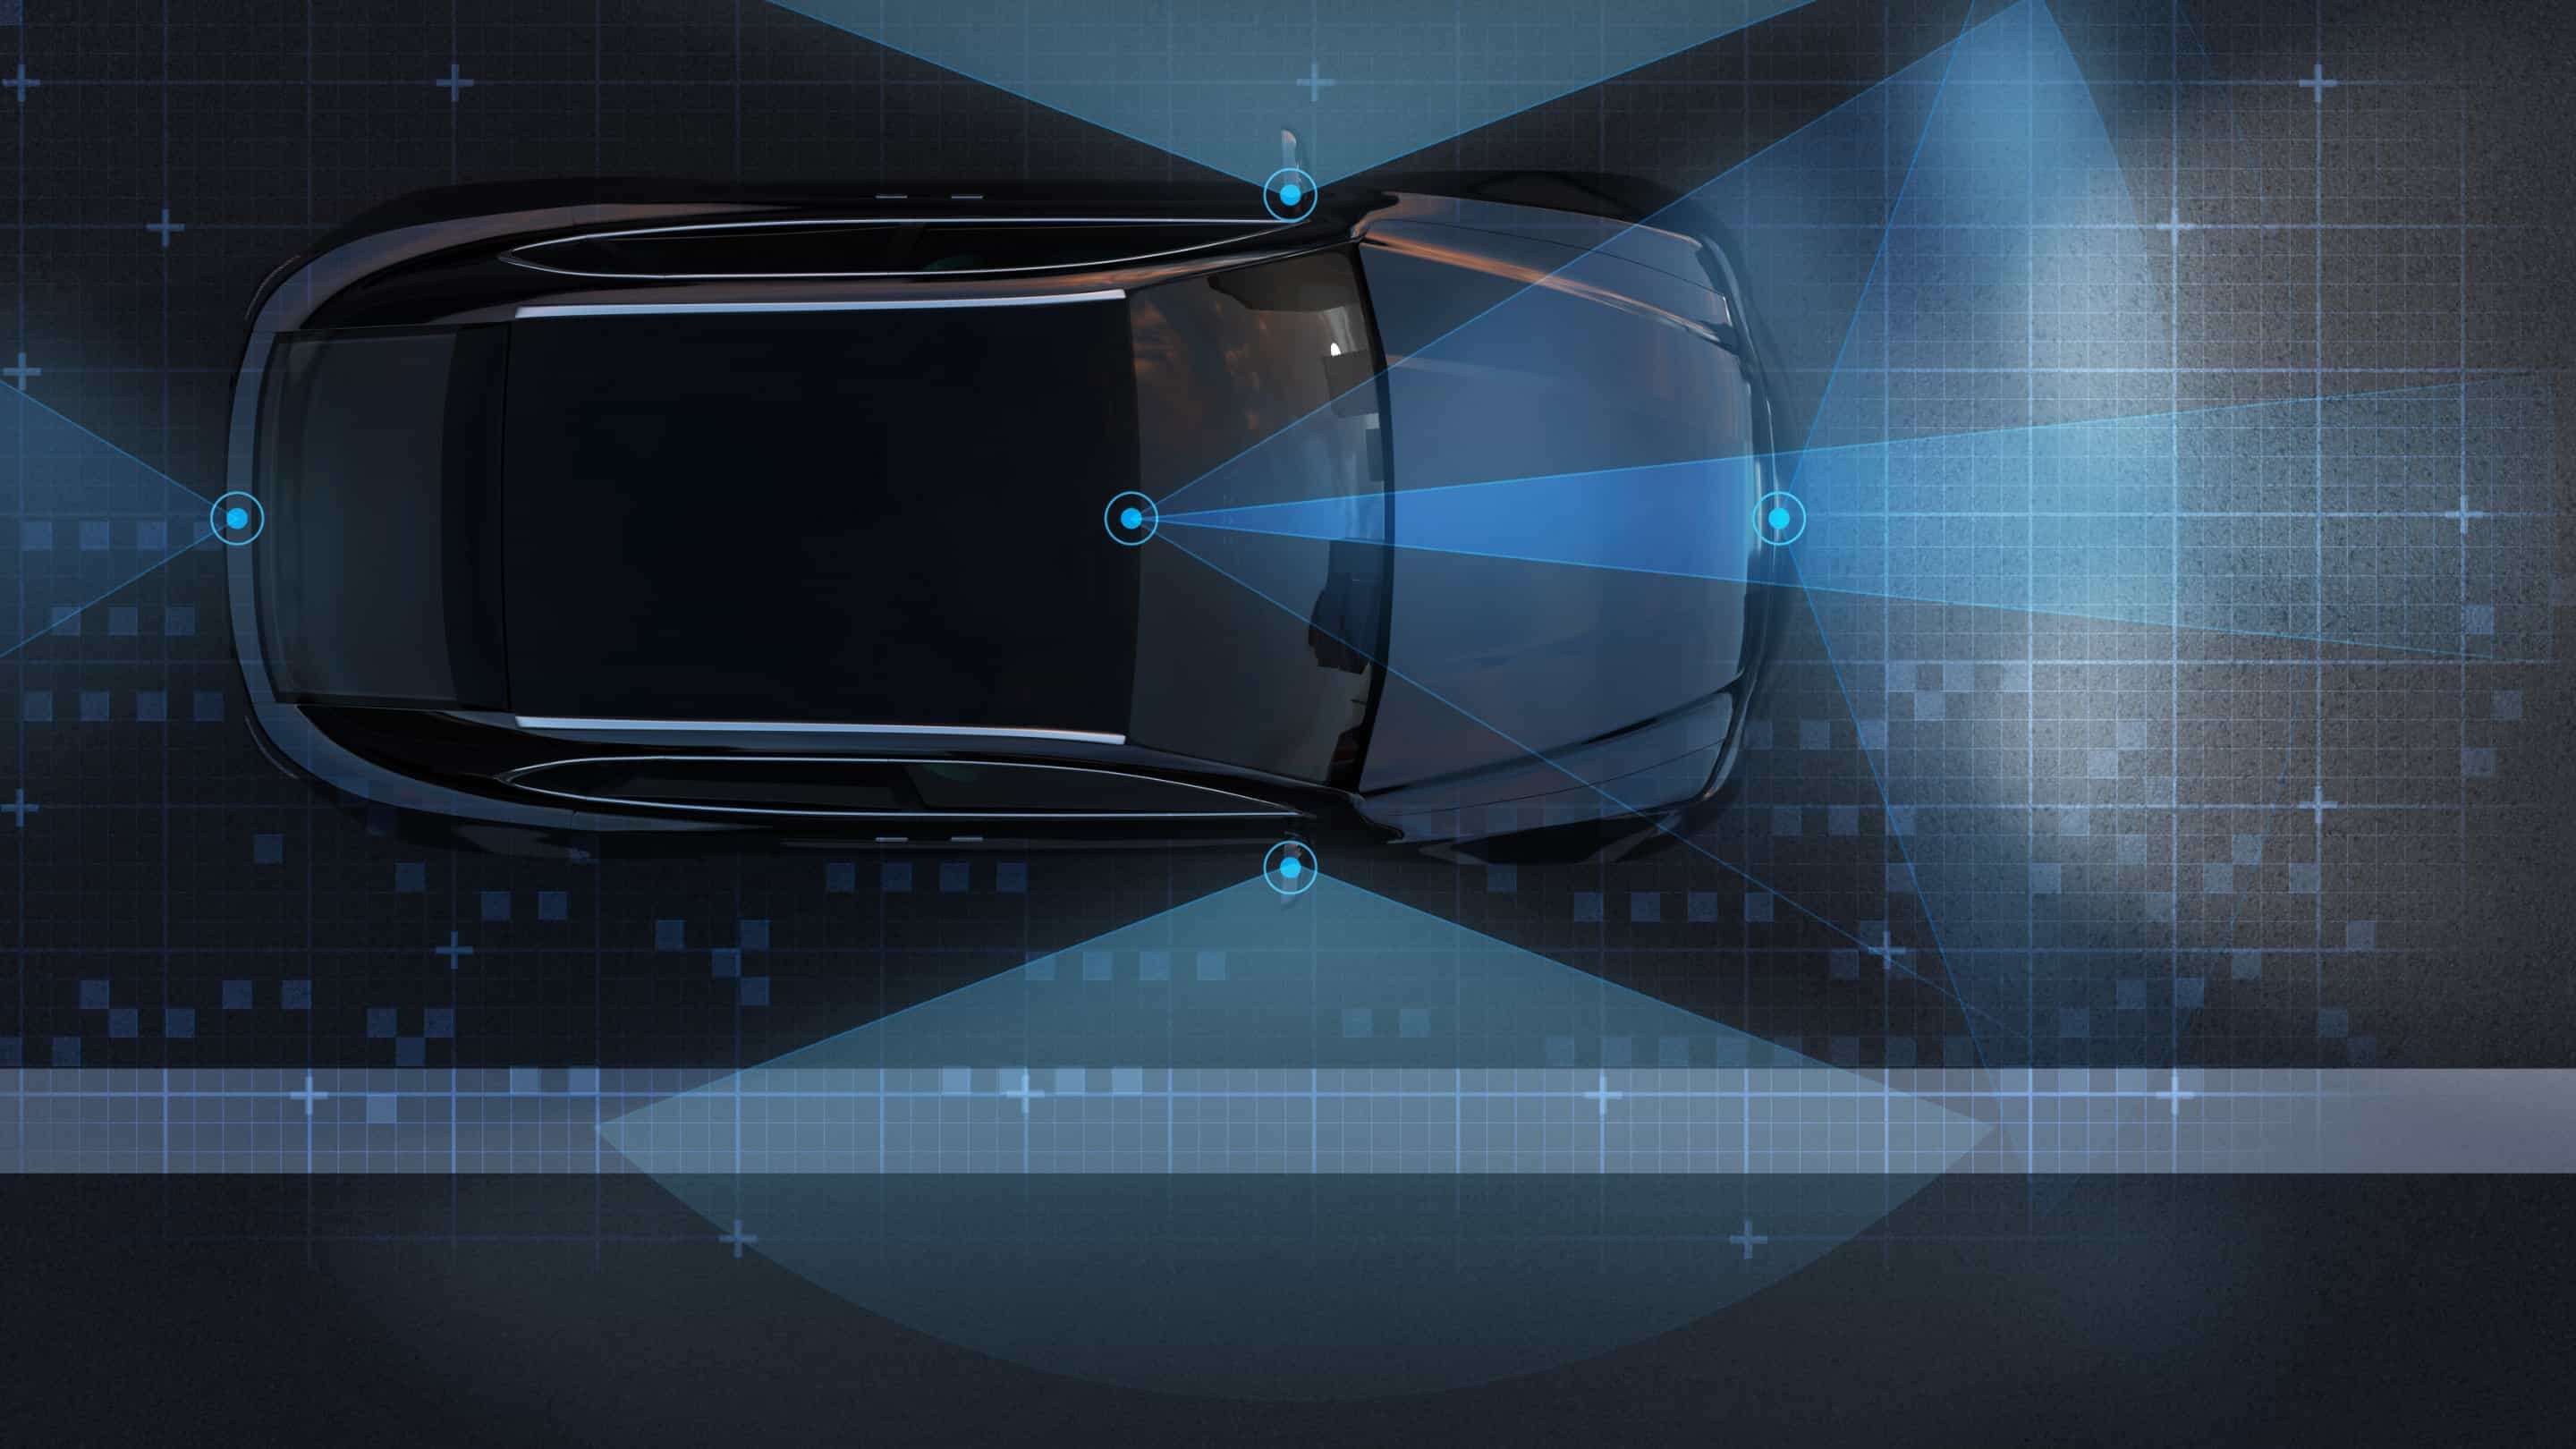 Impactinator® Glass - Lidar senzor zaščitno steklo avto z modrimi črtami in pikami